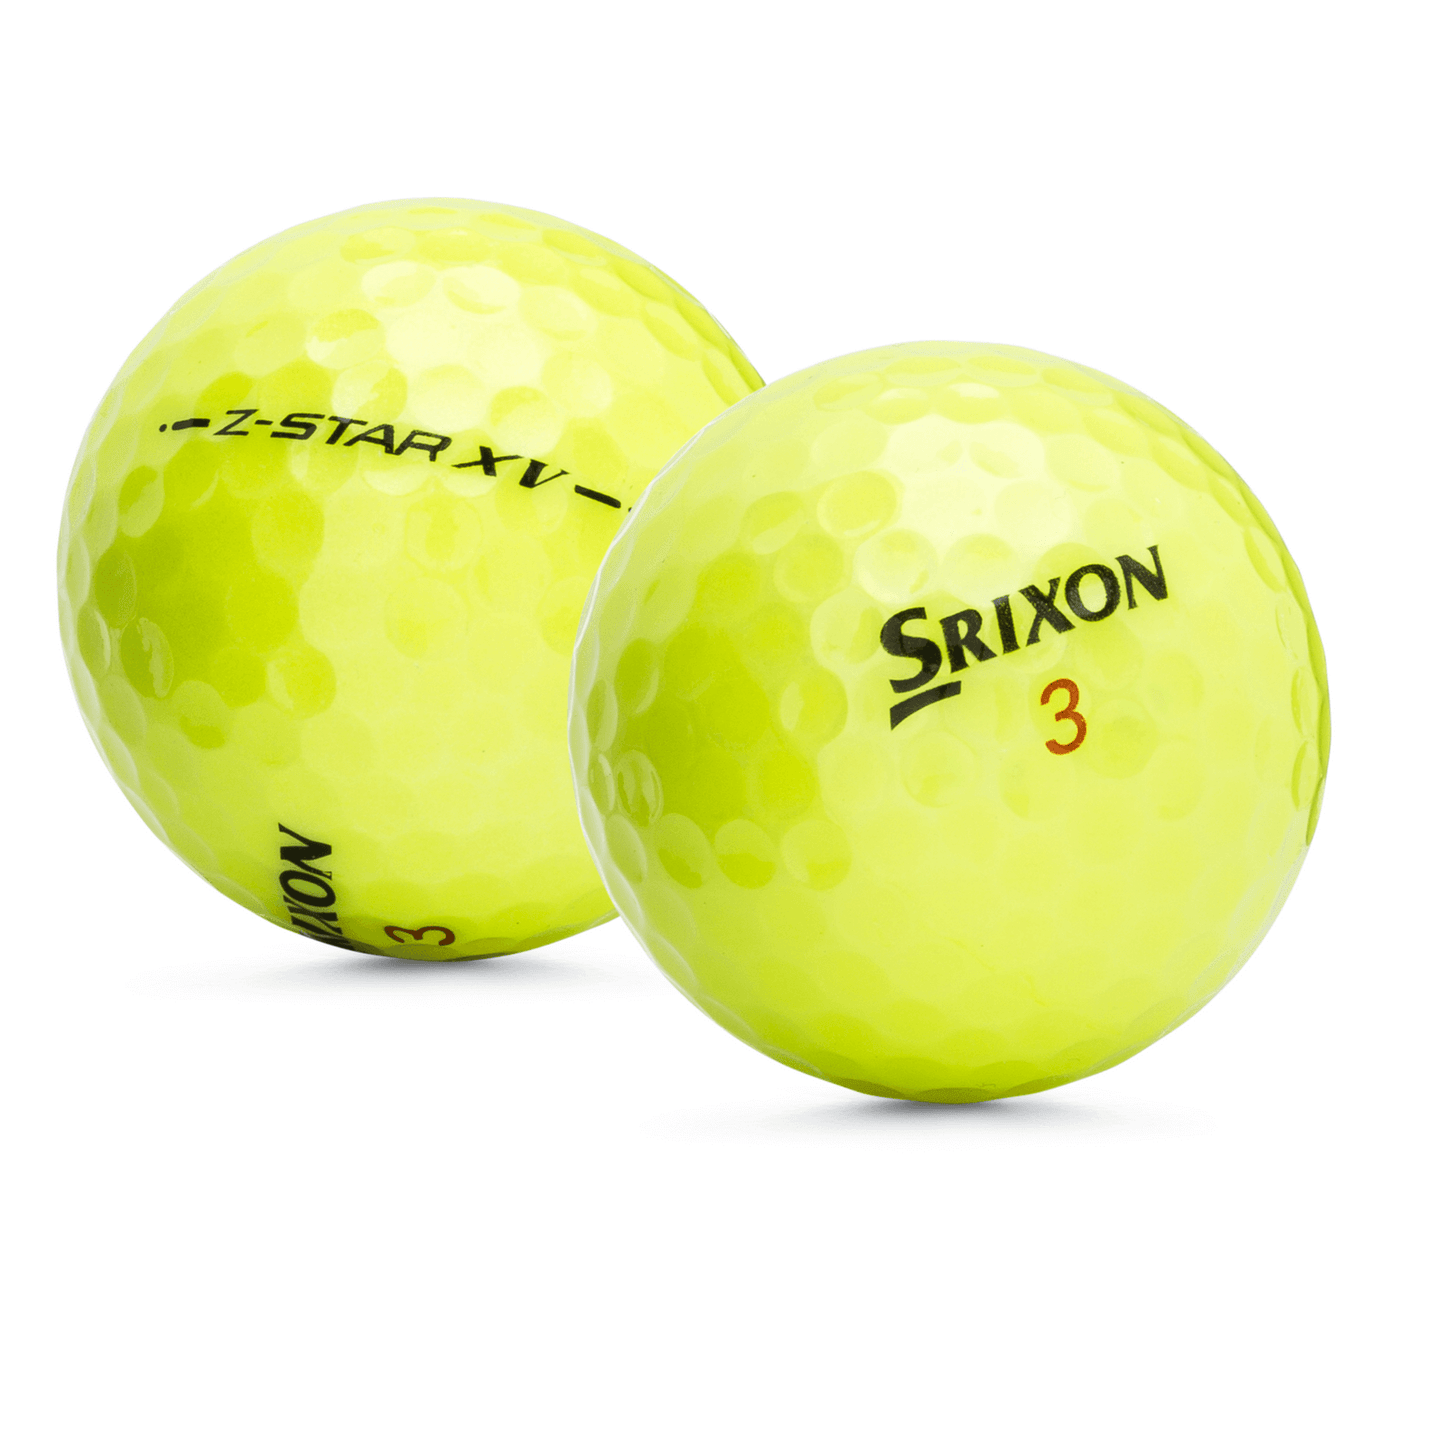 Used Srixon Z-Star XV Yellow Golf Balls - 1 Dozen